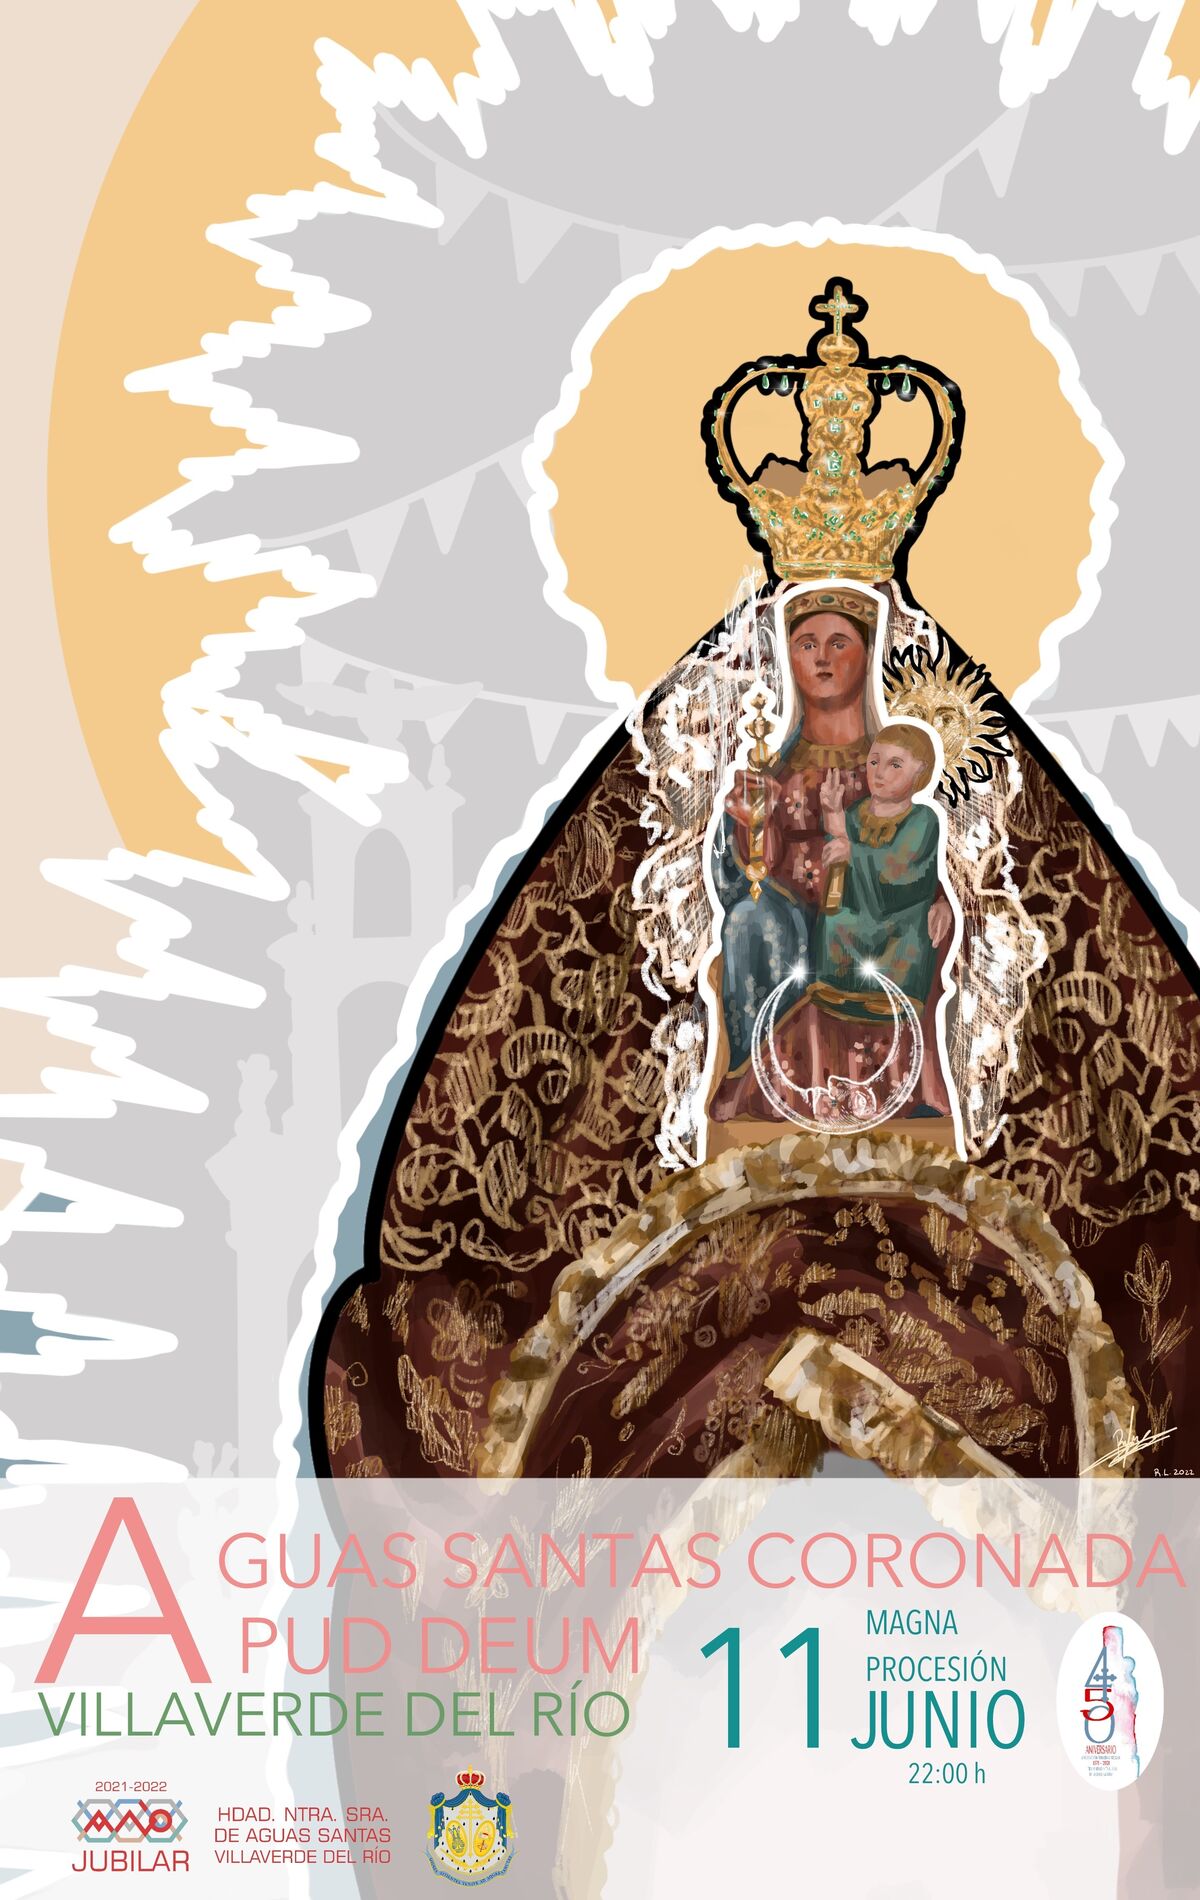 La Virgen de Aguas Santas de Villaverde del Río saldrá este sábado en procesión extraordinaria